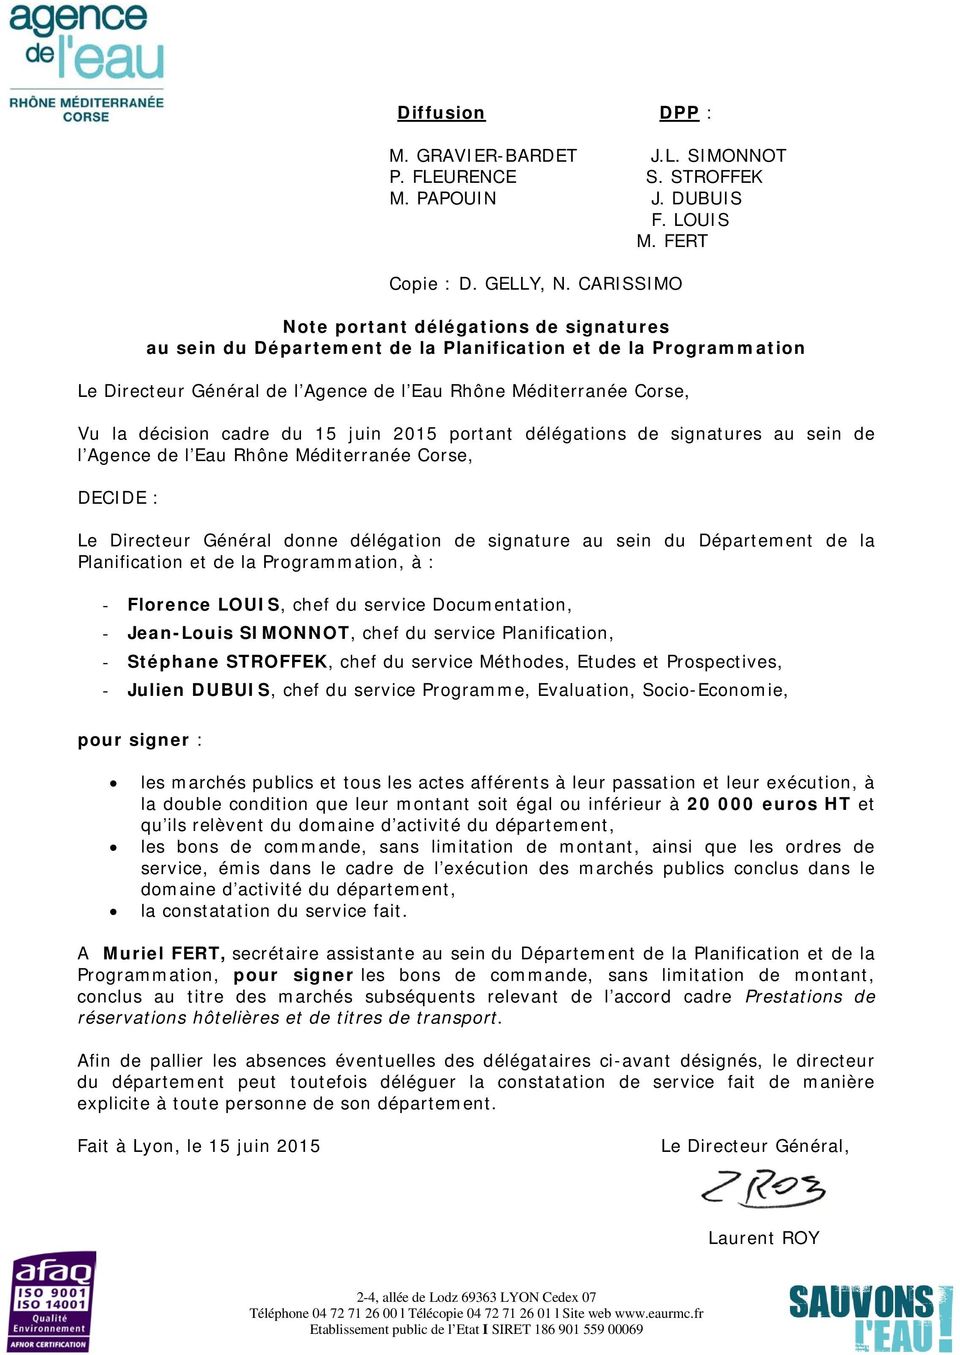 cadre du 15 juin 2015 portant délégations de signatures au sein de l Agence de l Eau Rhône Méditerranée Corse, Le Directeur Général donne délégation de signature au sein du Département de la